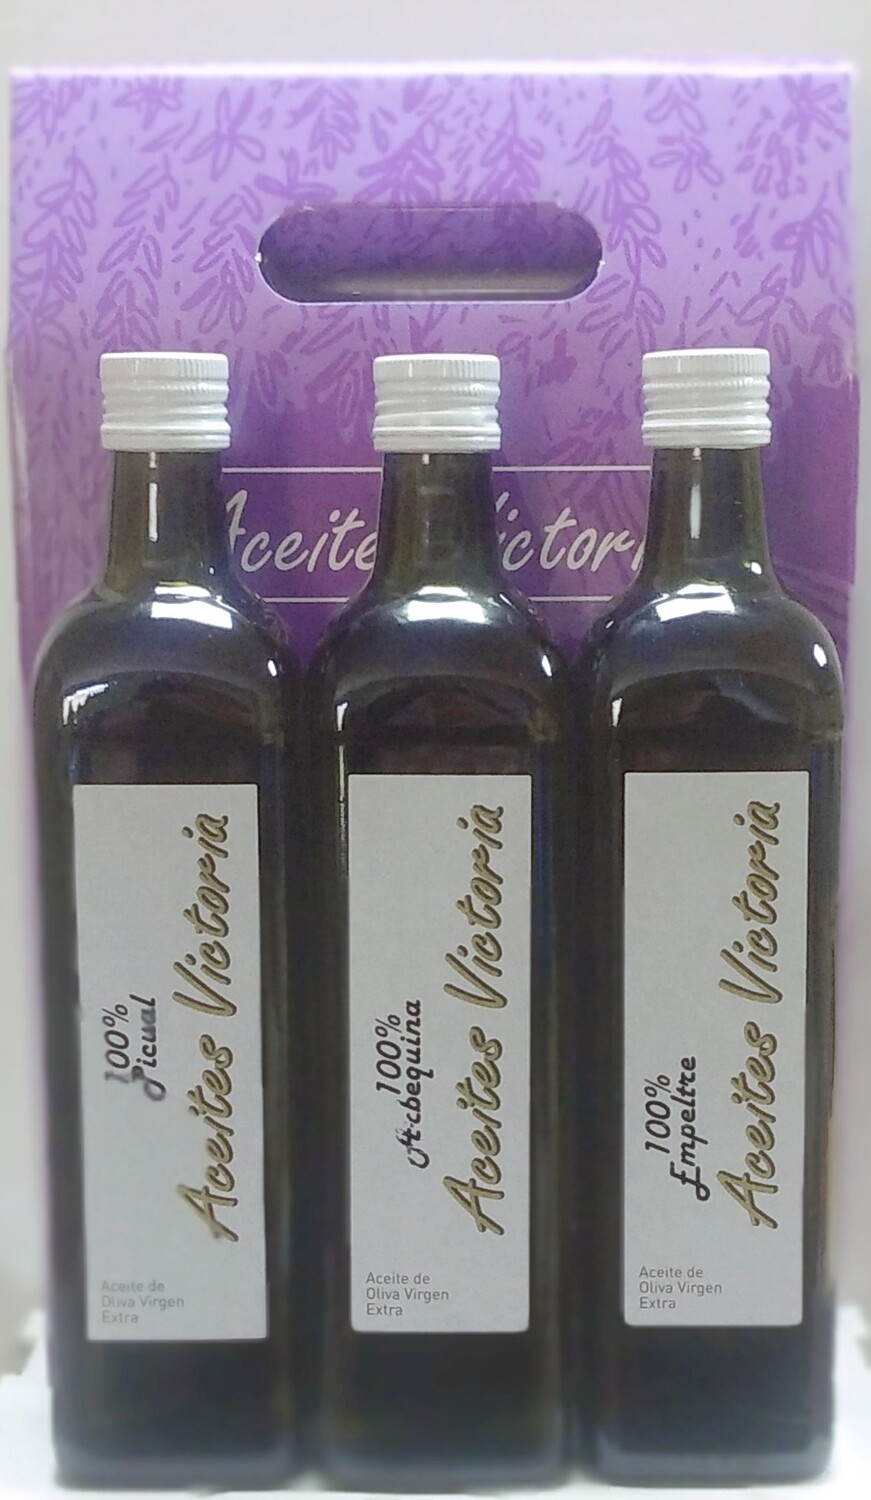 guía Agregar leyendo SELECCION ESPECIAL AOVE (3x750ml) - Estuche con tres variedades de aceite  de oliva virgen extra(Arbequina, Picual y Empeltre)